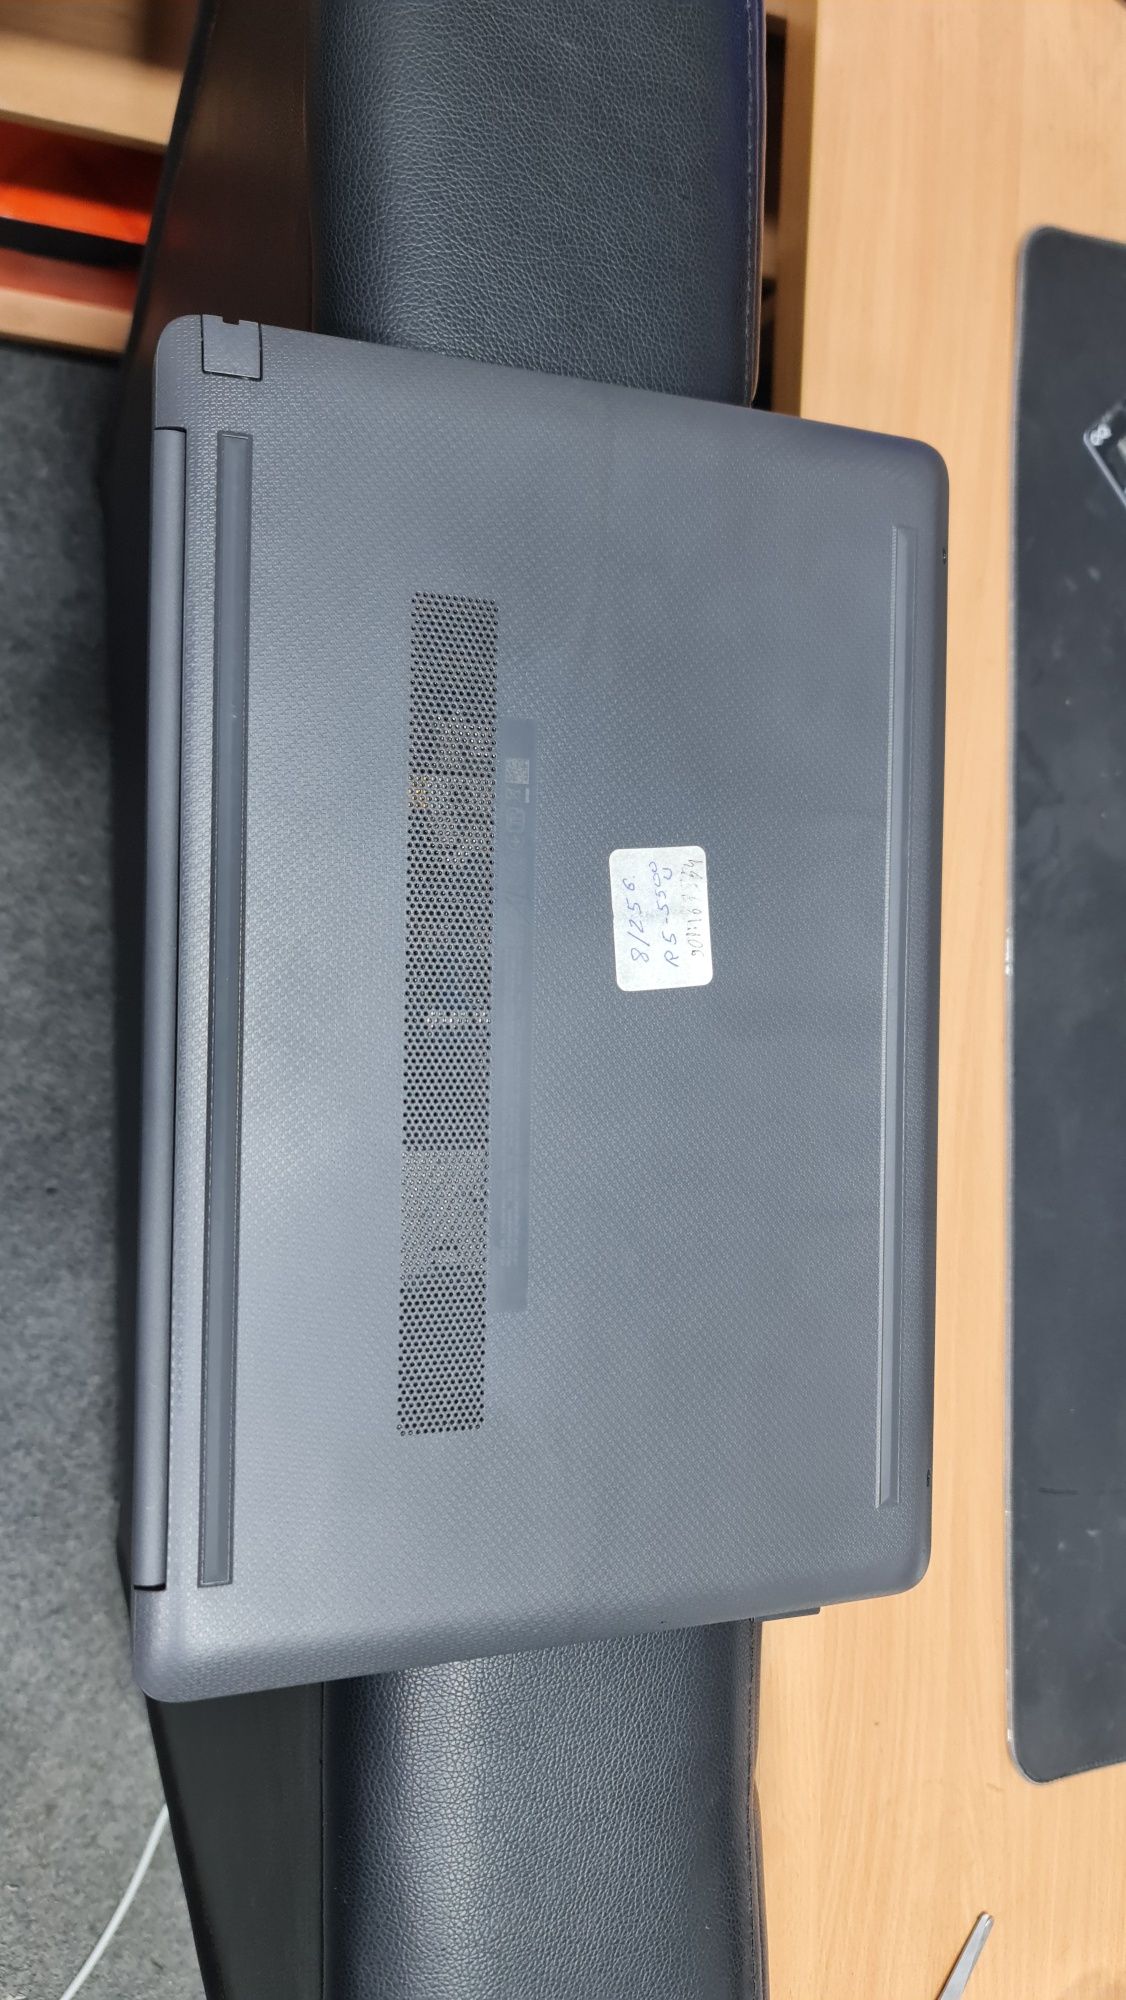 Noutbuk HP - 255 G8 Notebook PC